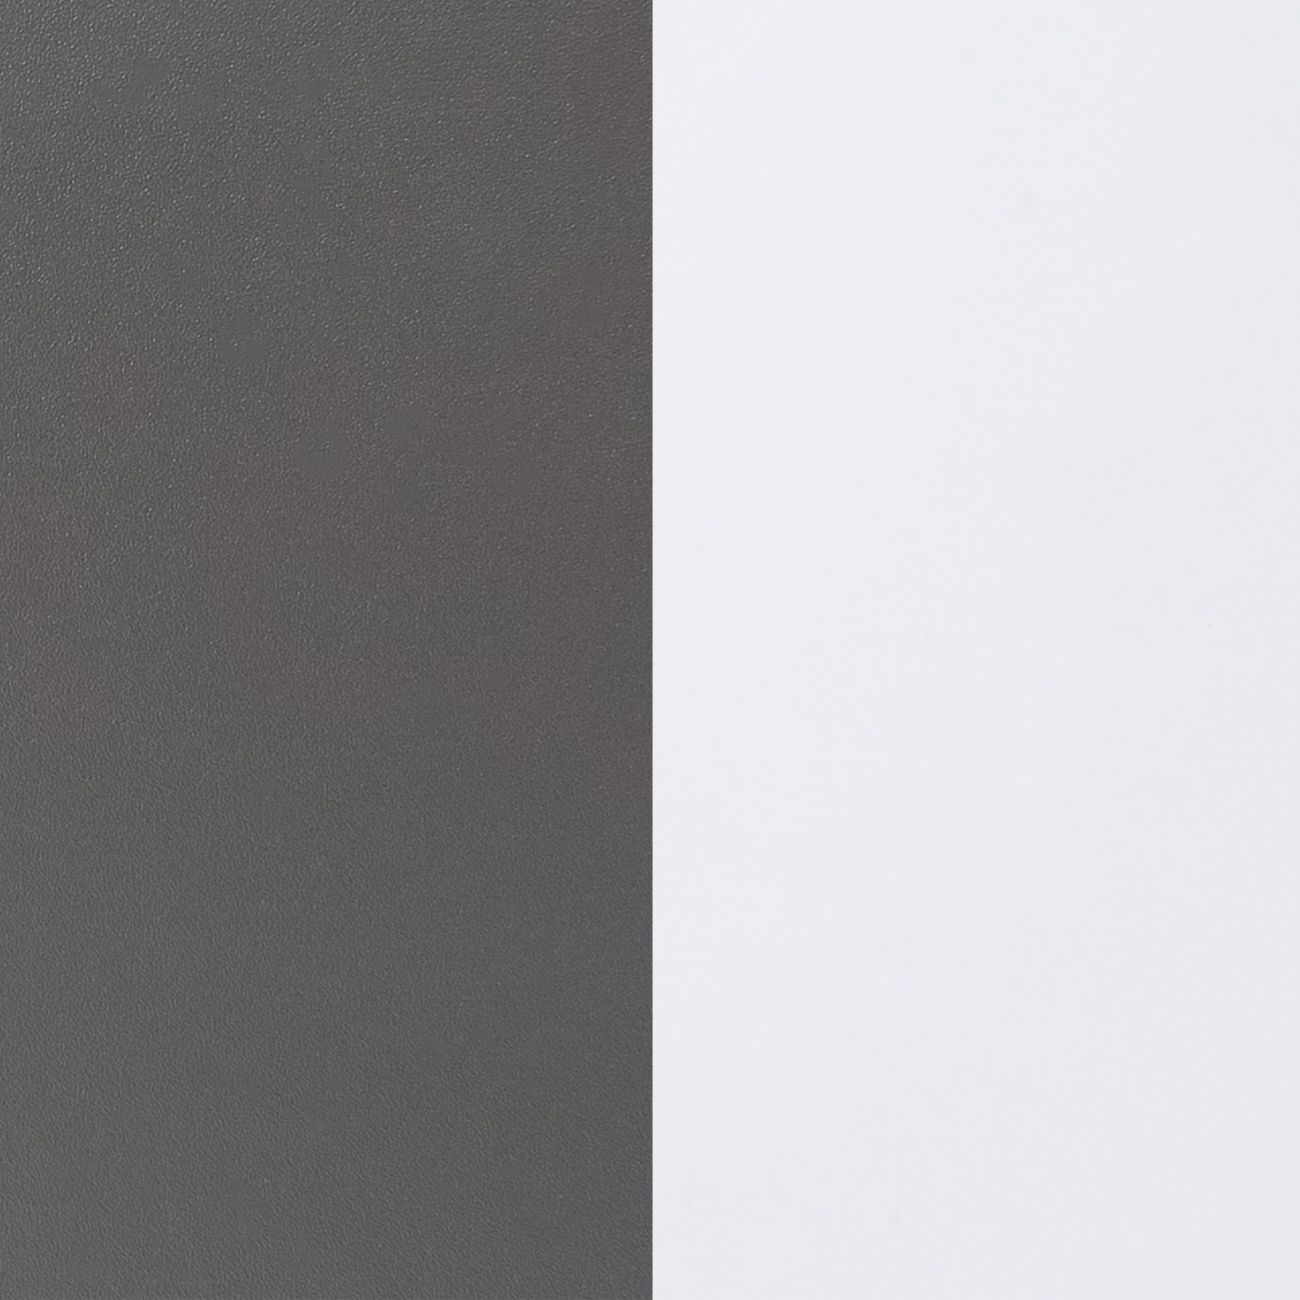 duehome  Armario de 2 Puertas Correderas, Armario Doble, Modelo Uniq 180,  Acabado en Blanco y Grafito, Medidas: 180 cm (Largo) x 207,6 cm (Alto) x 55  cm (Fondo) : : Hogar y cocina